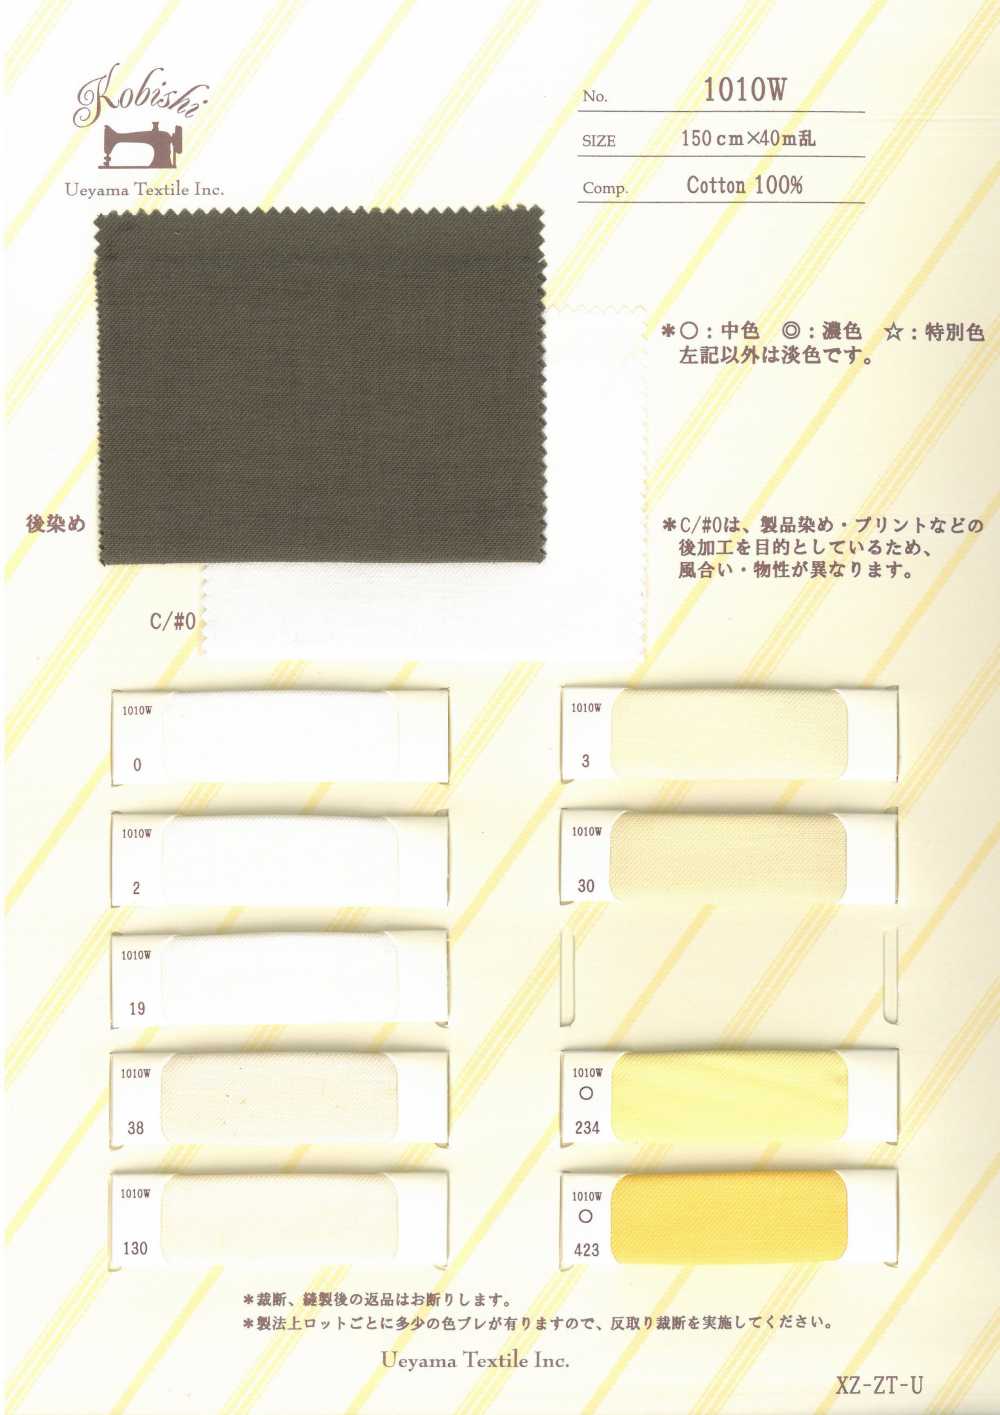 1010W Vải Lót Túi Khổ Rộng Số 4 Ueyama Textile